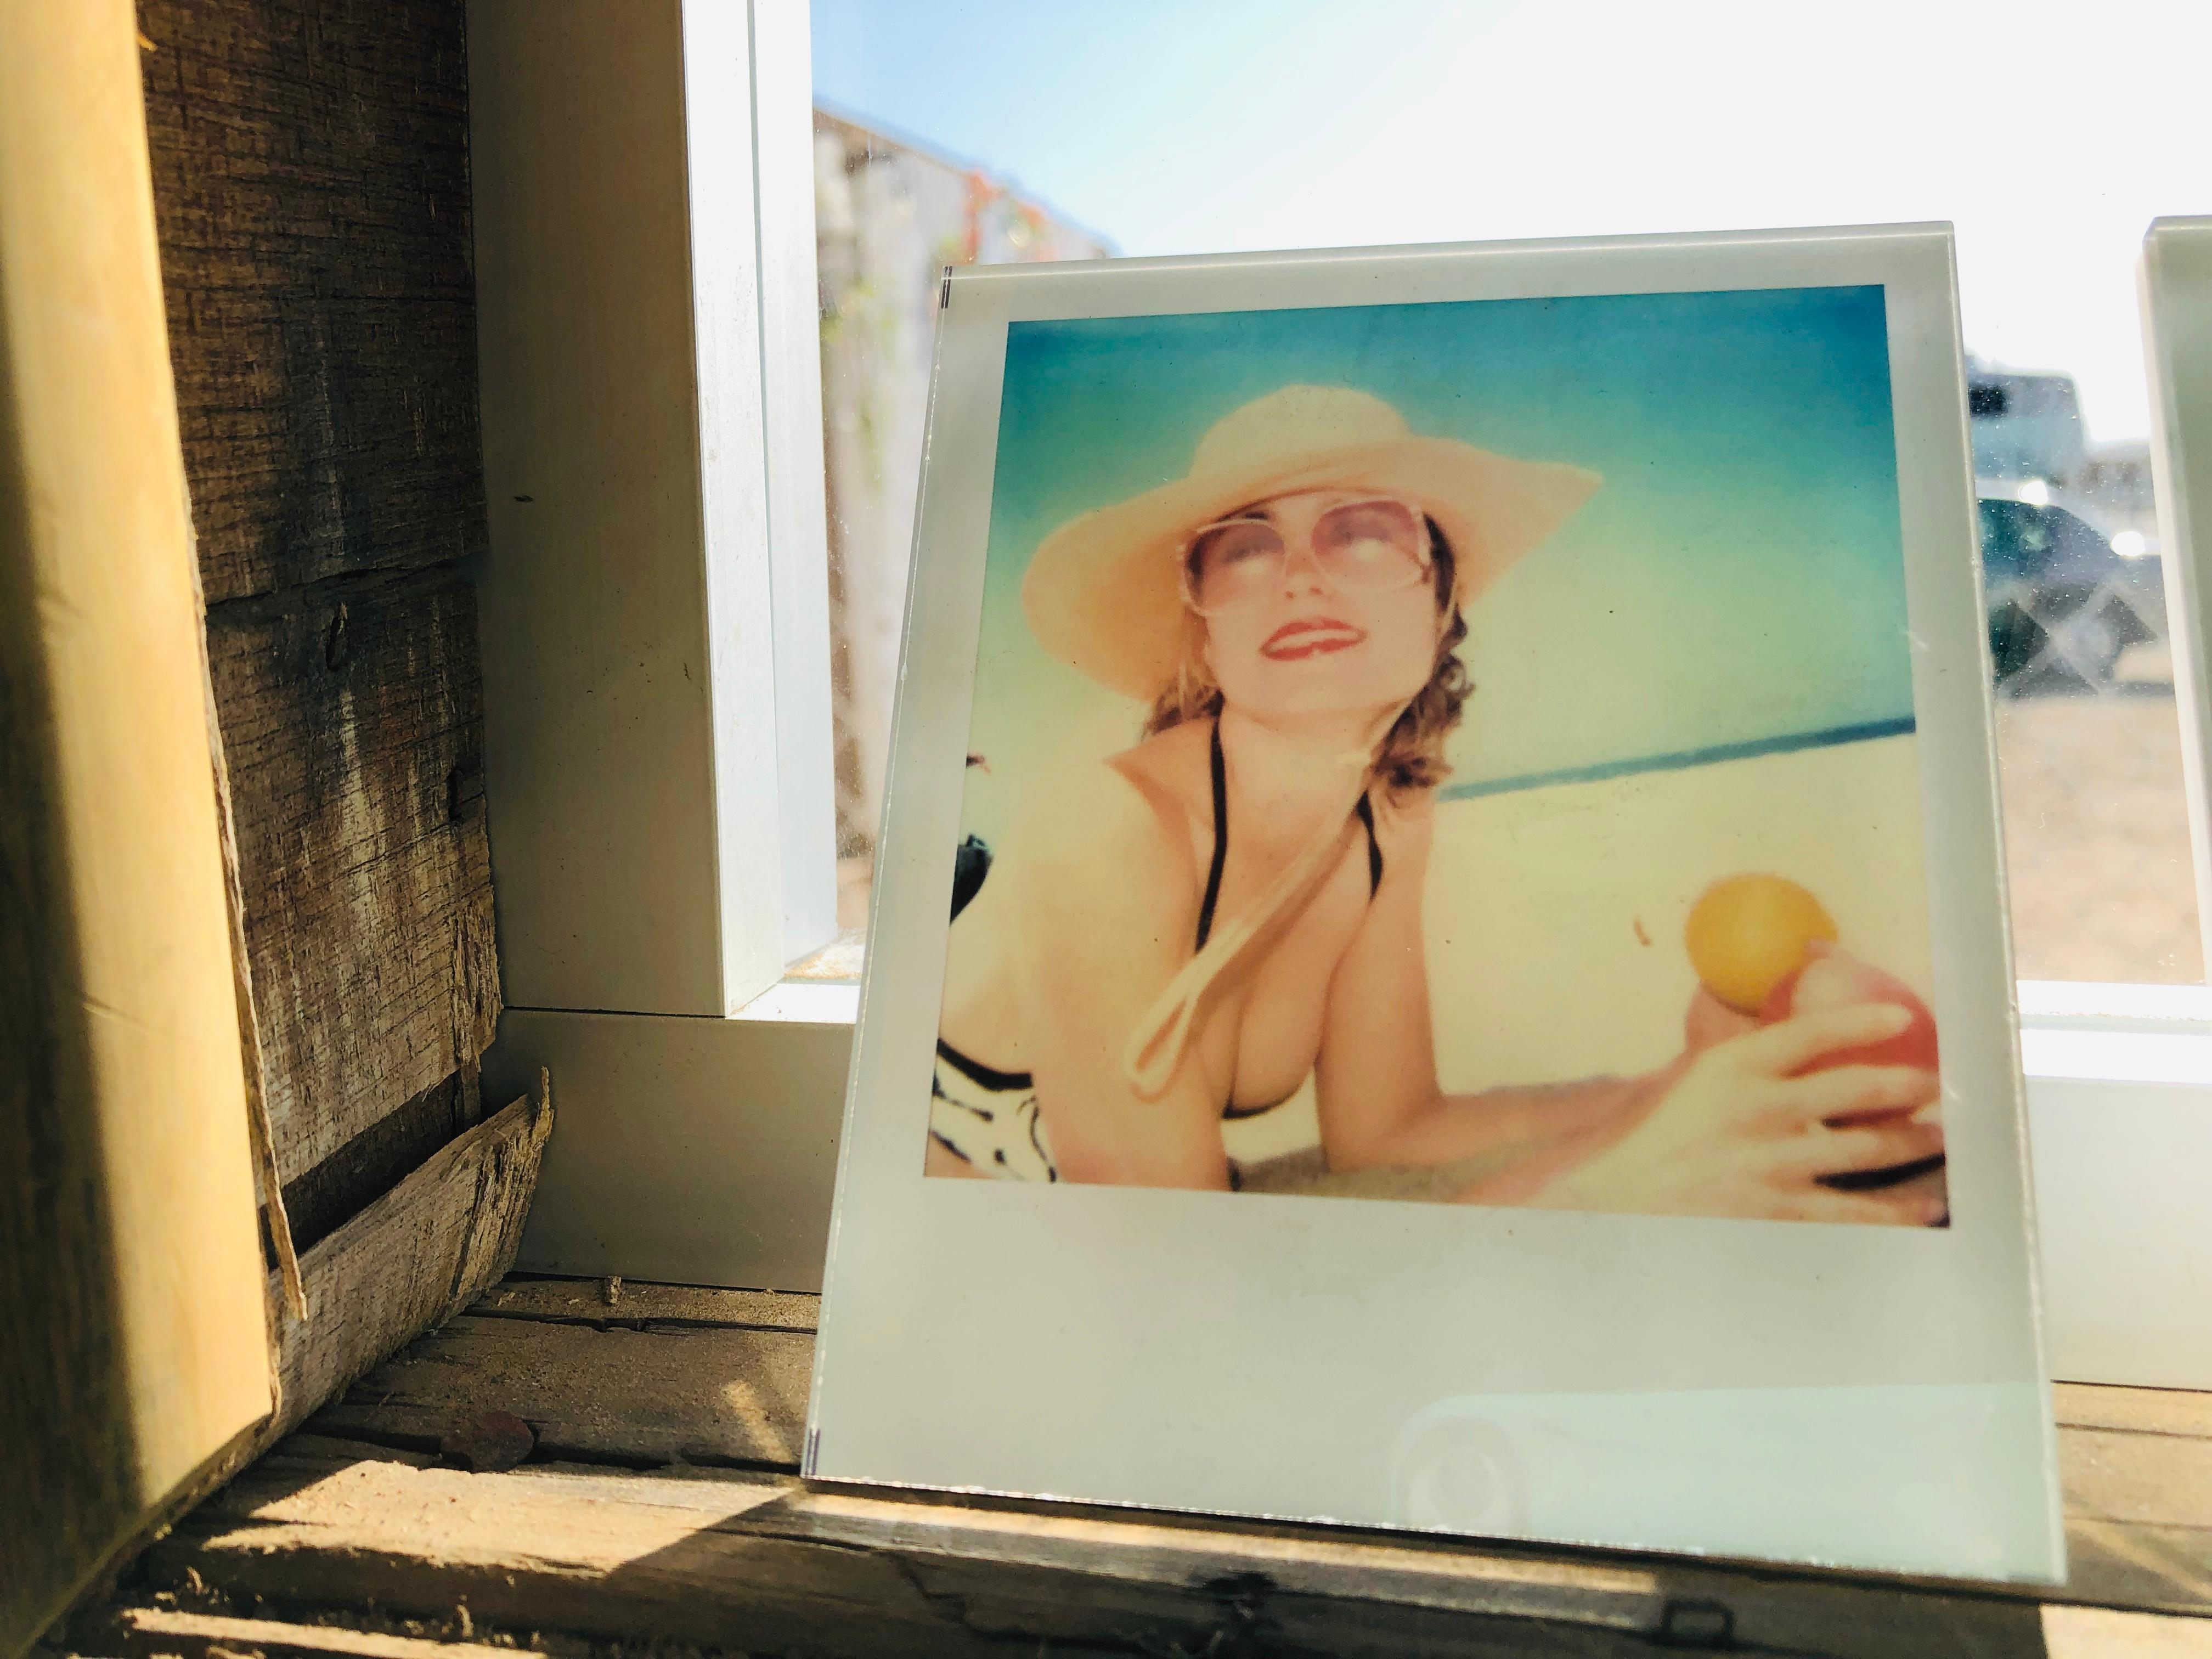 Die Minis von Stefanie Schneider
ohne Titel #03" (Beachshoot) mit Radha Mitchell, 2005
verso signiert und Signaturmarke
Lambda digitales Farbfoto basierend auf einem Polaroid

Offene Editionen in Polaroidgröße 1999-2013
10.7 x 8,8cm (Bild